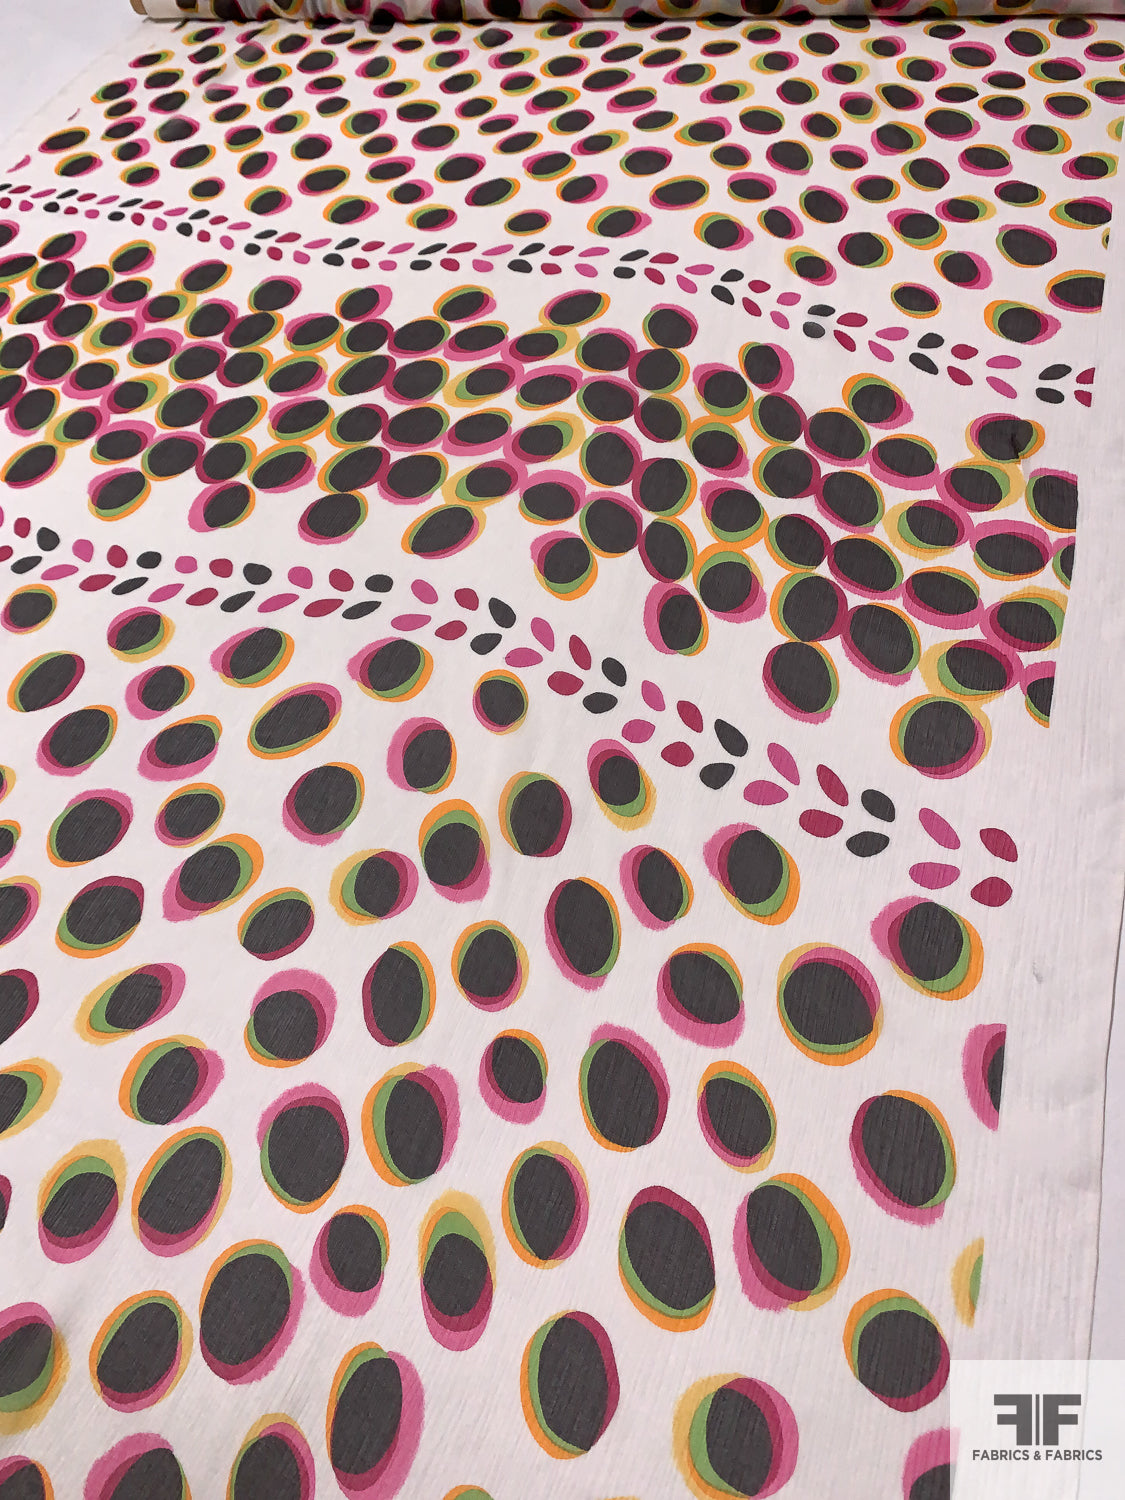 Morphed Circle Theme Printed Crinkled Silk Chiffon - Magenta / Orange / Tangerine / Green / Black / White